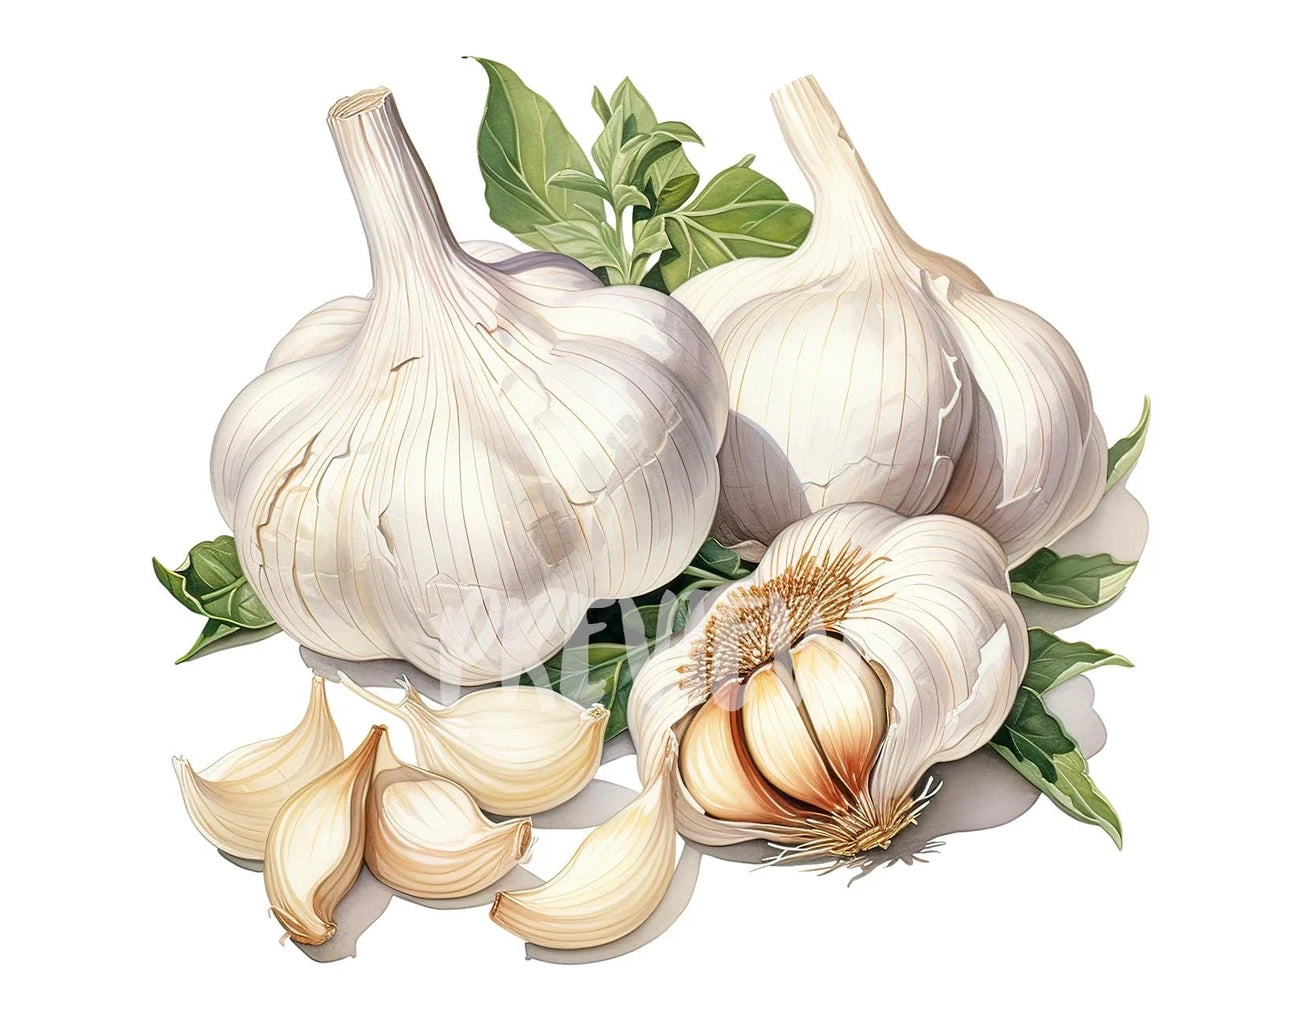 Watercolor Garlic Clipart